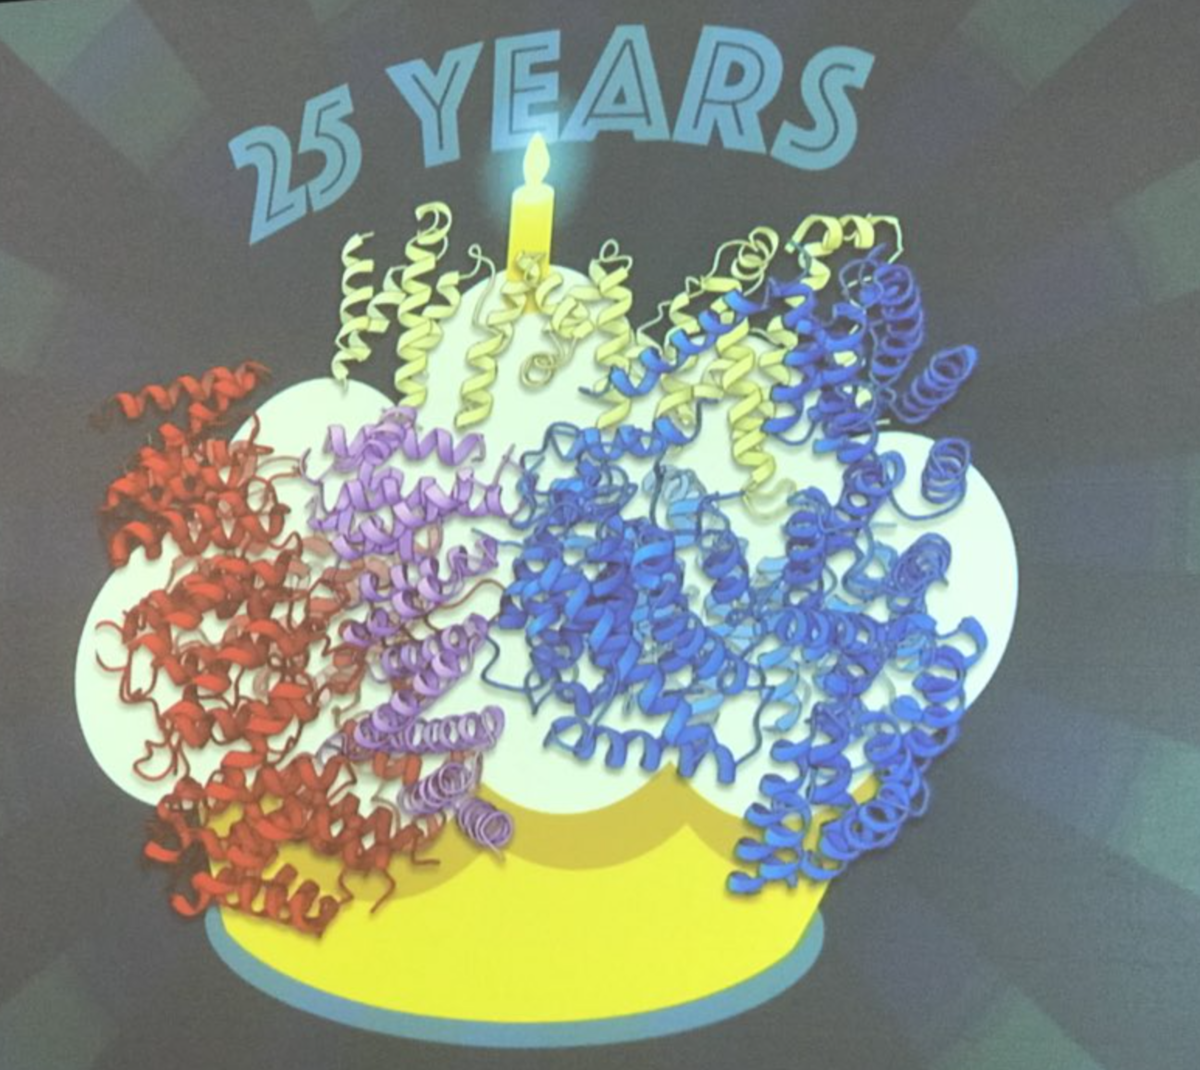 El Dr. Kochanek desveló la estructura de la huntingtina (las cintas onduladas) en febrero en una reunión sobre terapias, como un regalo de cumpleaños para la comunidad EH que celebraba 25 años desde el descubrimiento del gen.  